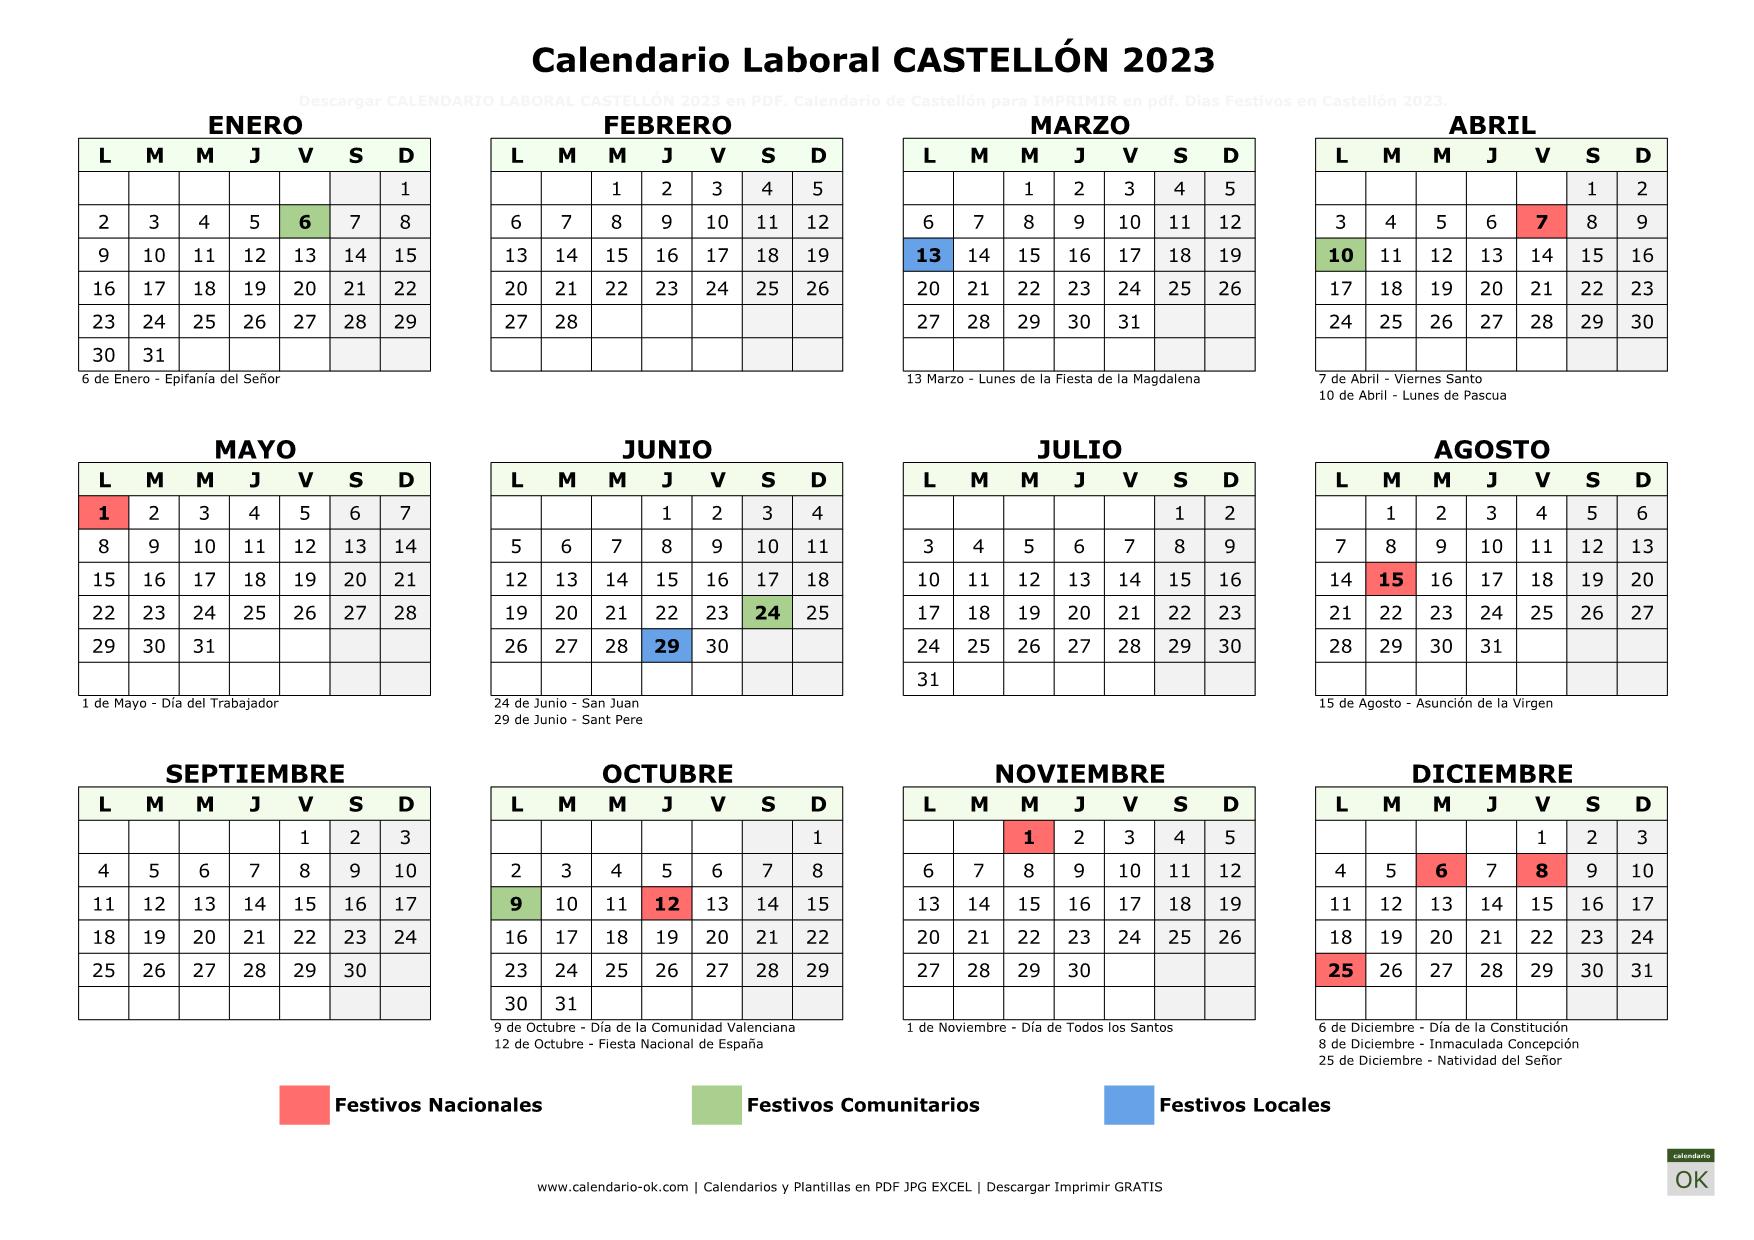 Calendario Laboral Castellón 2023 horizontal